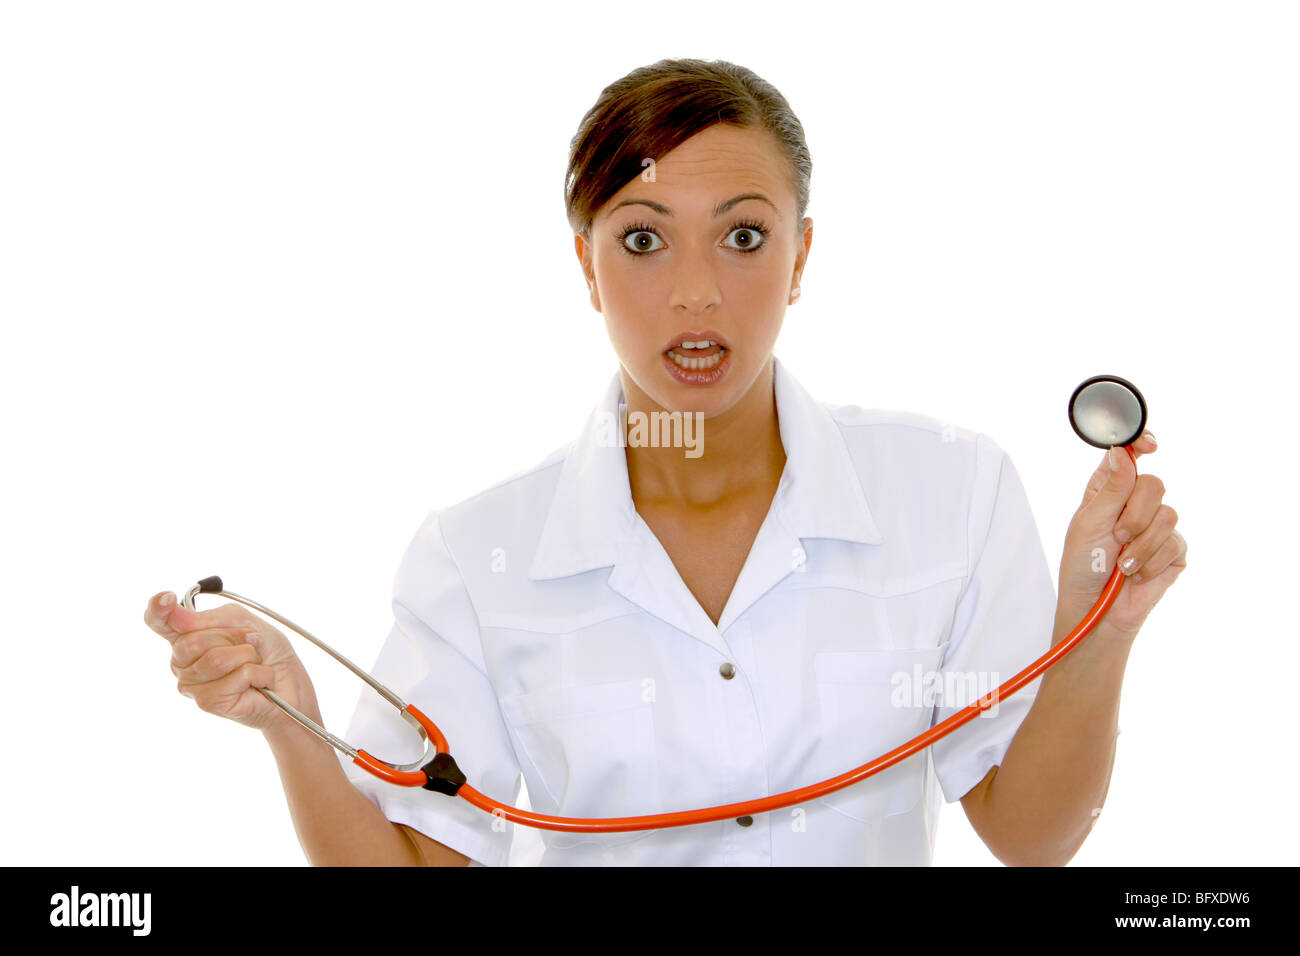 Krankenschwester mit Stethoskop, nurse with stethoscope Stock Photo